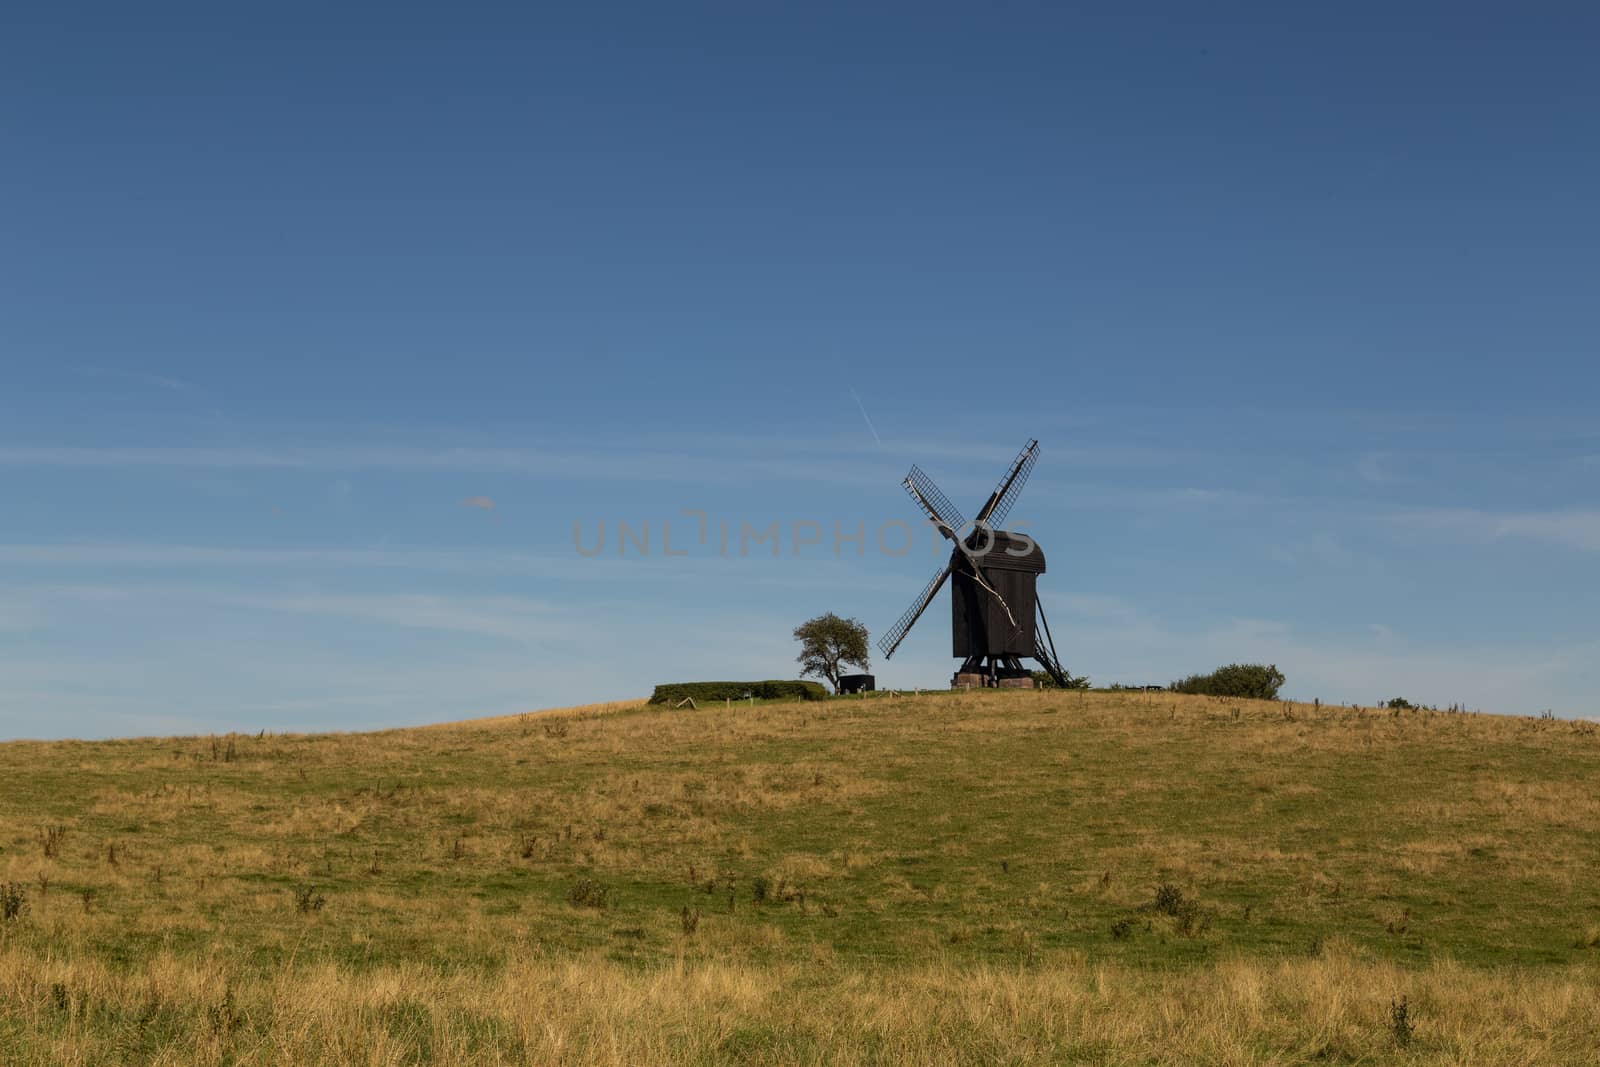 Helsinge, Denmark - August 13, 2015: The historic Danish windmill called Pibe Moelle